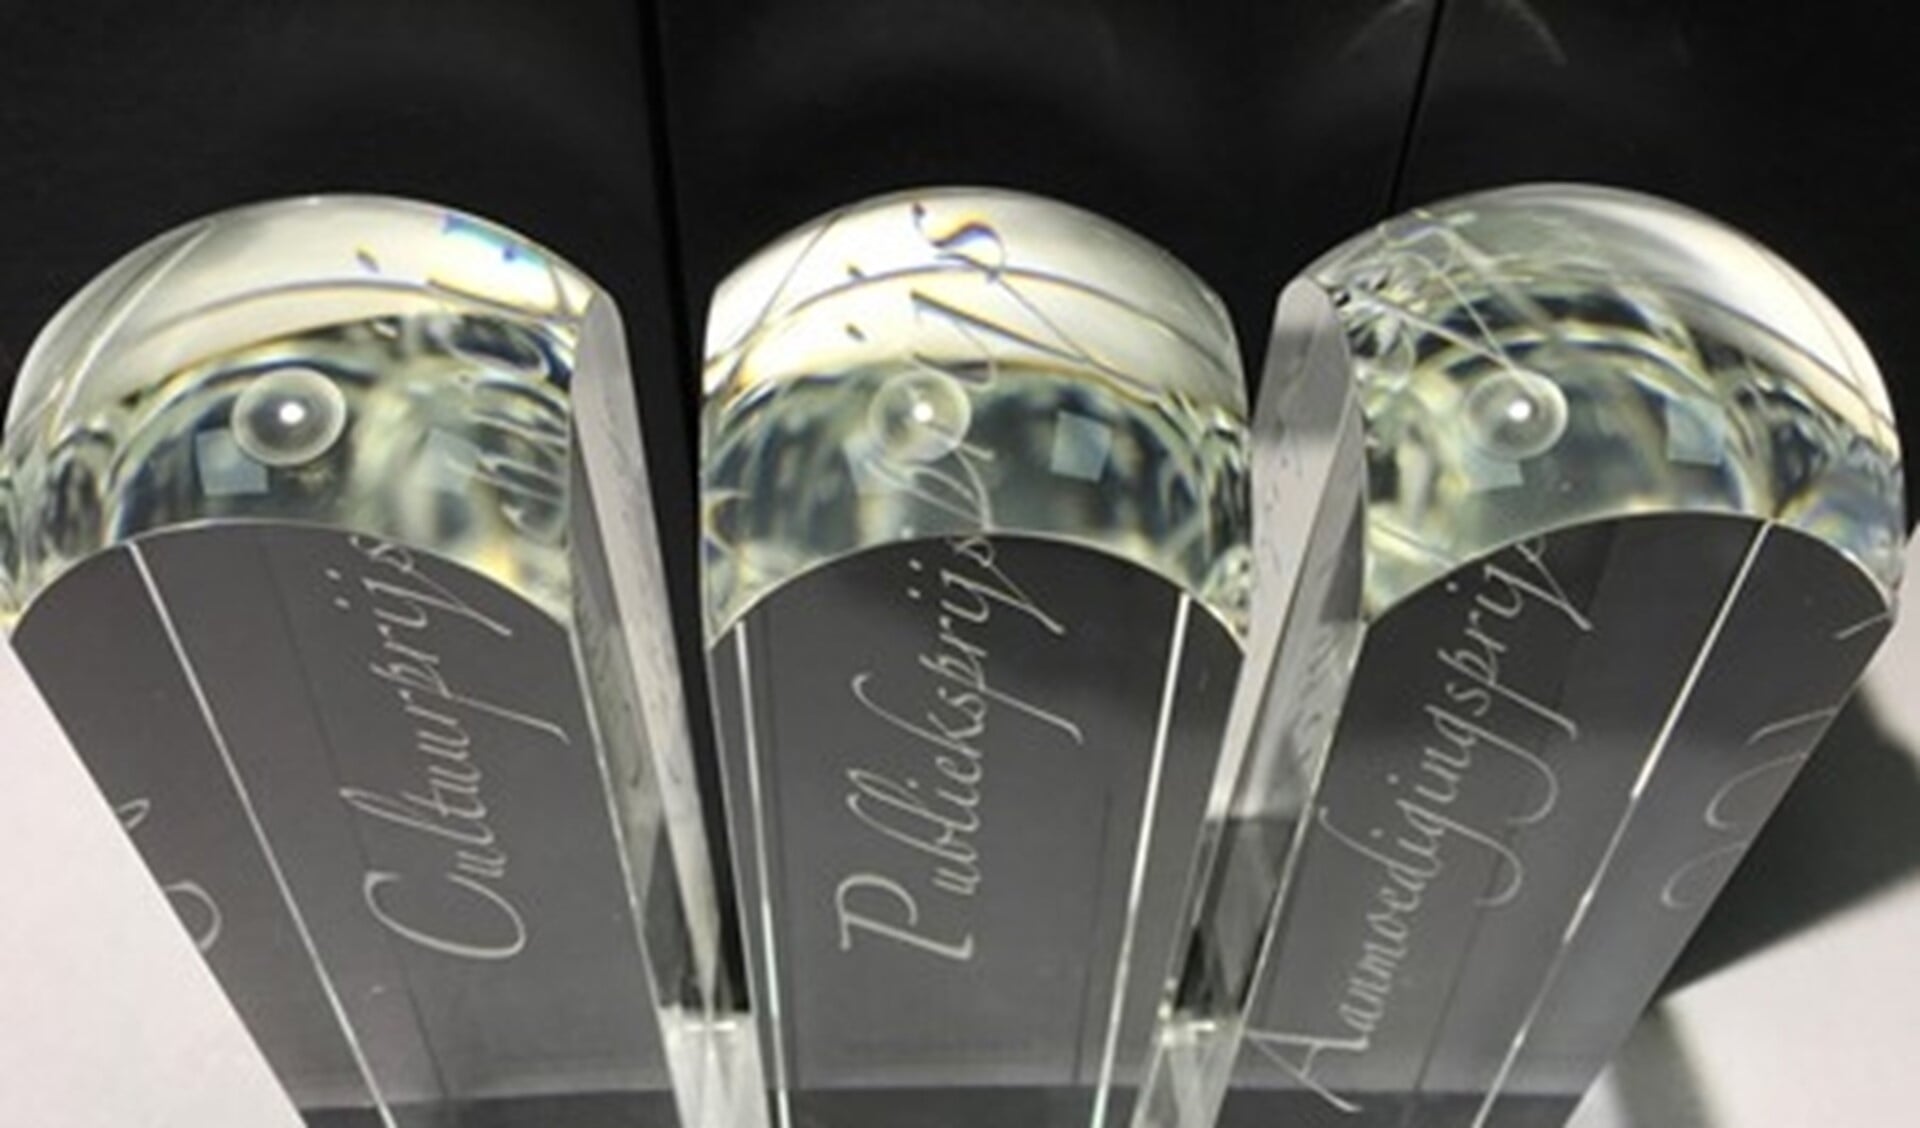 De glazen bokalen voor de winnaars van de prijzen (foto: Ming Hou Chen).